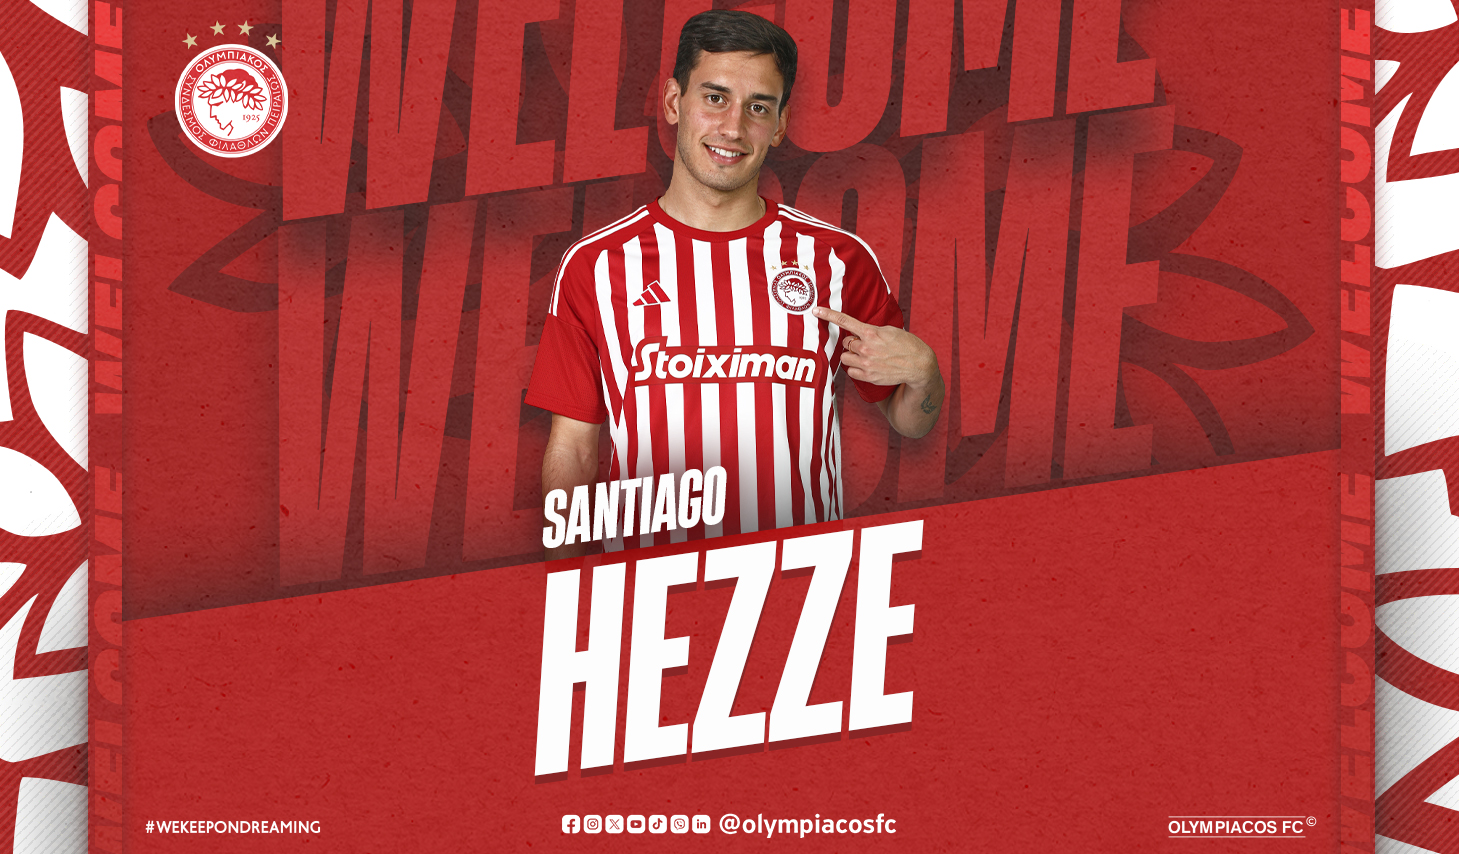 Santiago Hezze rejoint l’Olympiacos